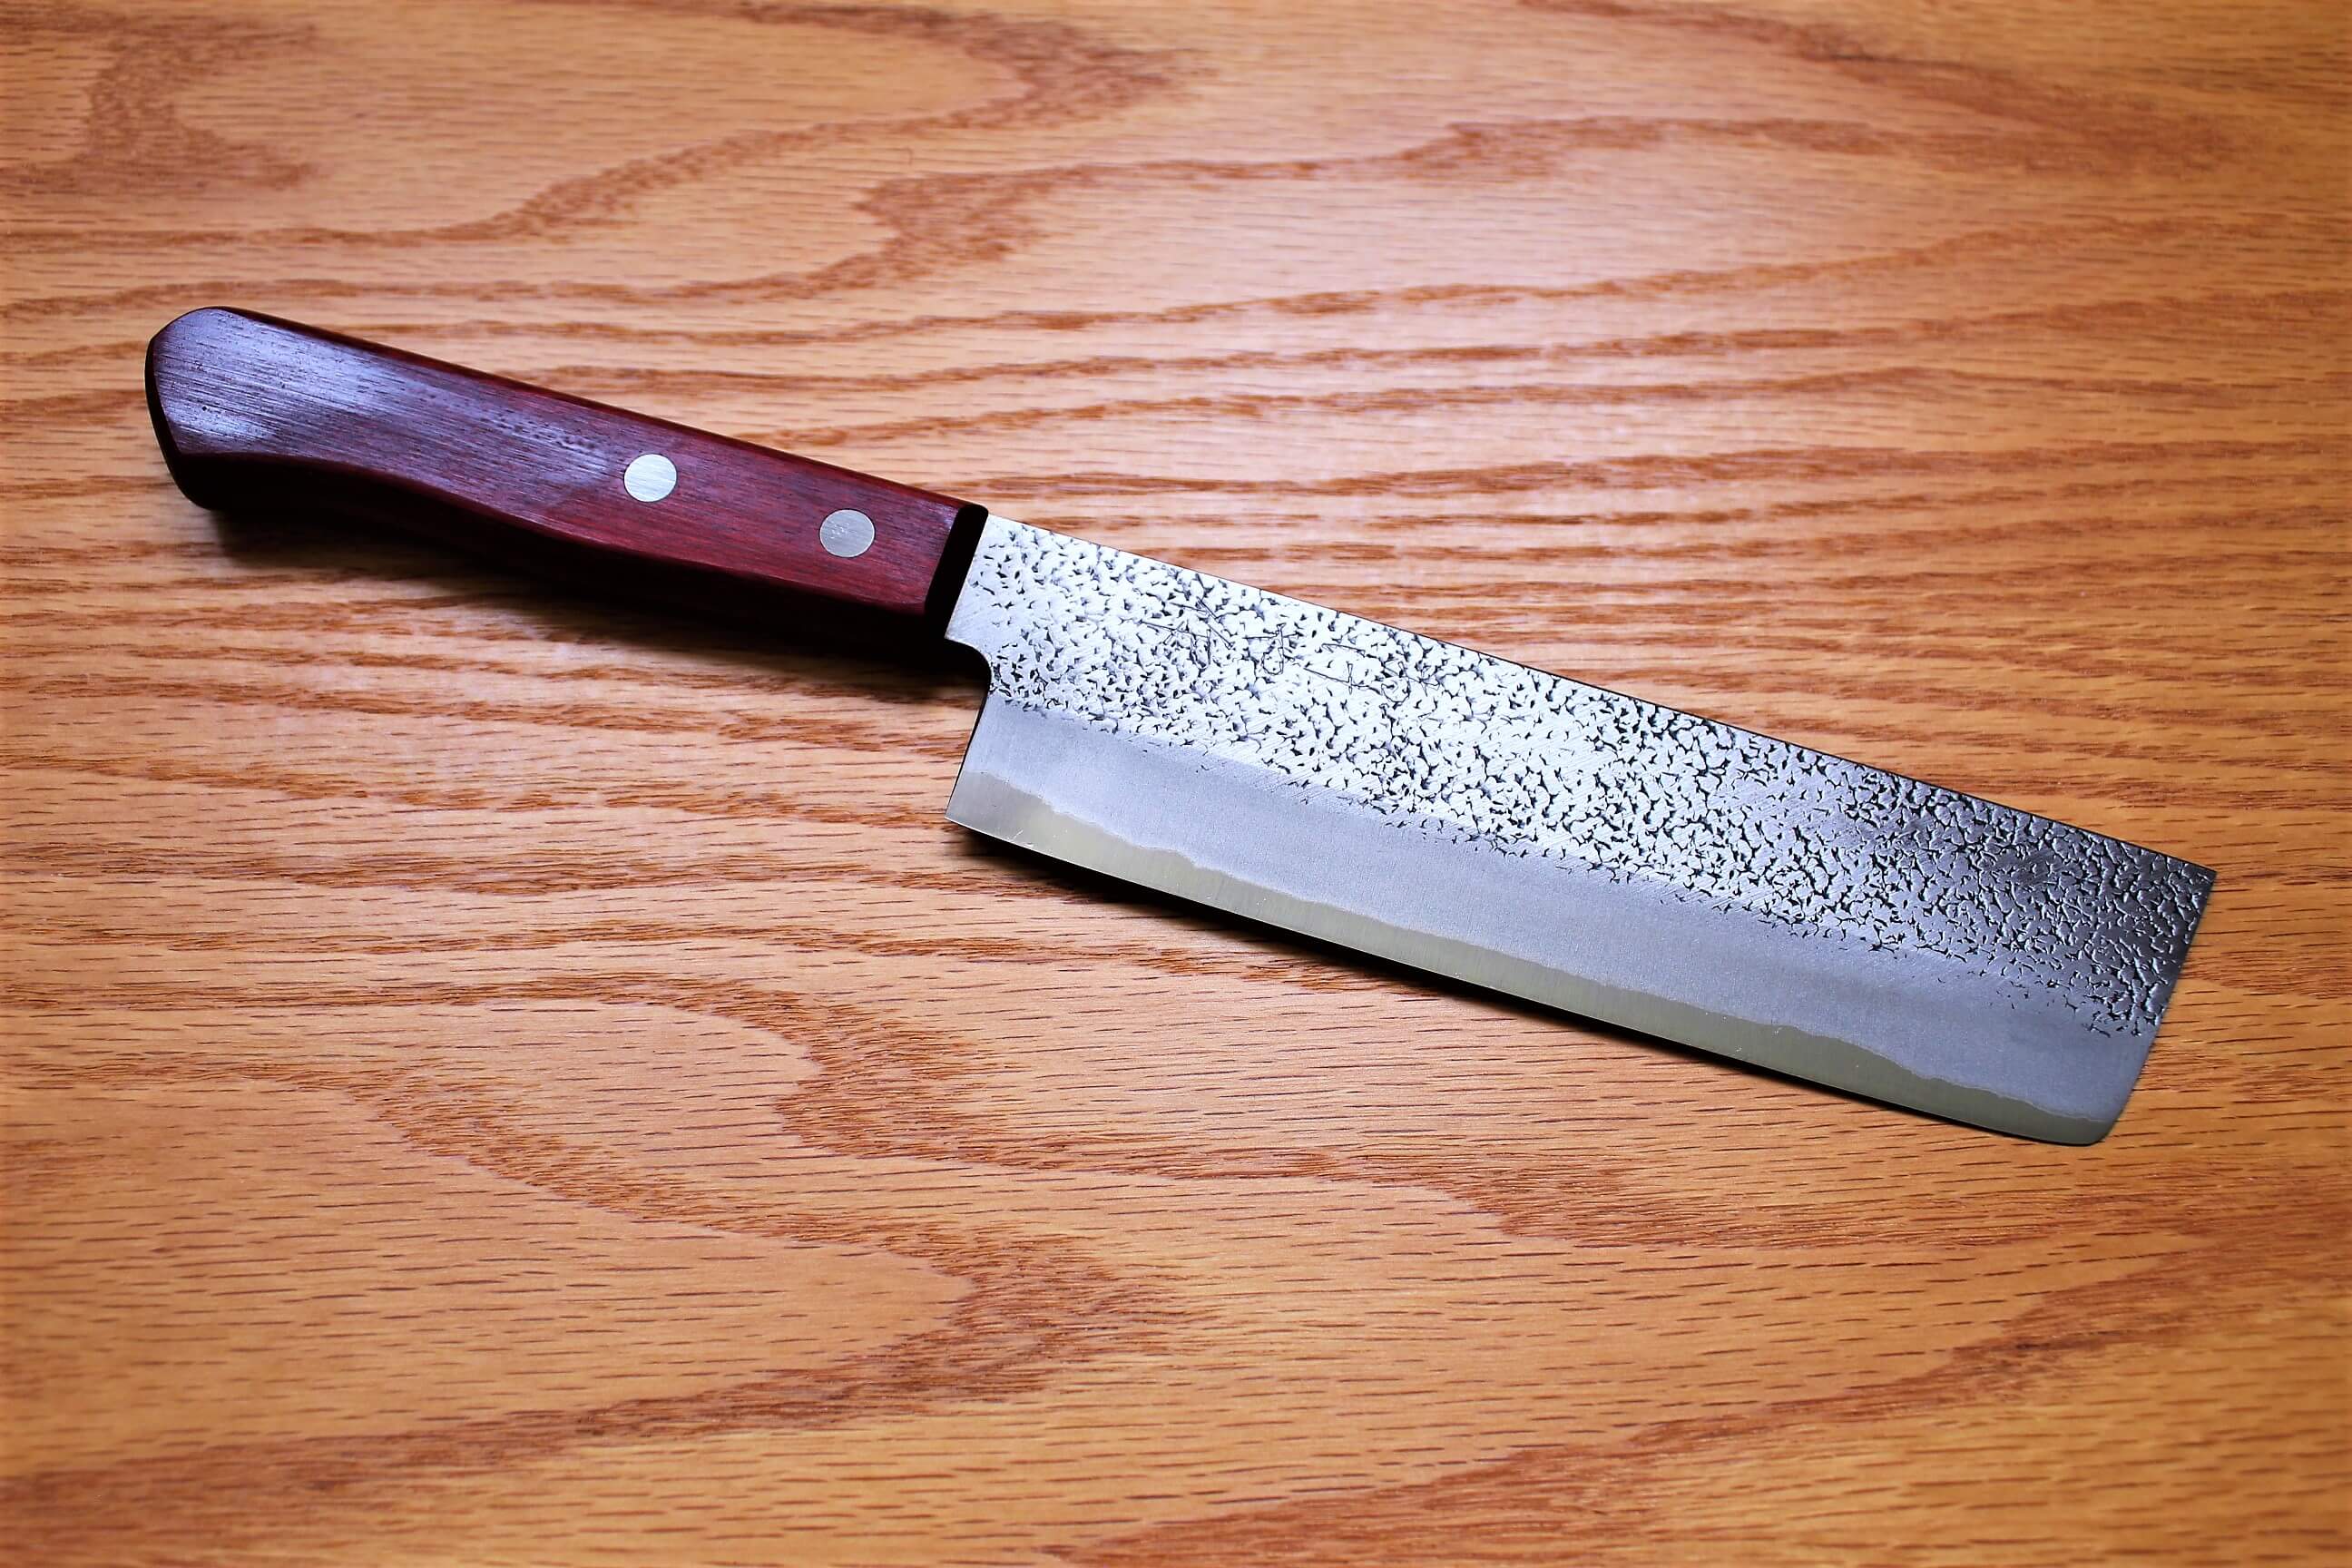 Culinary Knives- Chef Knives, Cleaver, and Nakiri